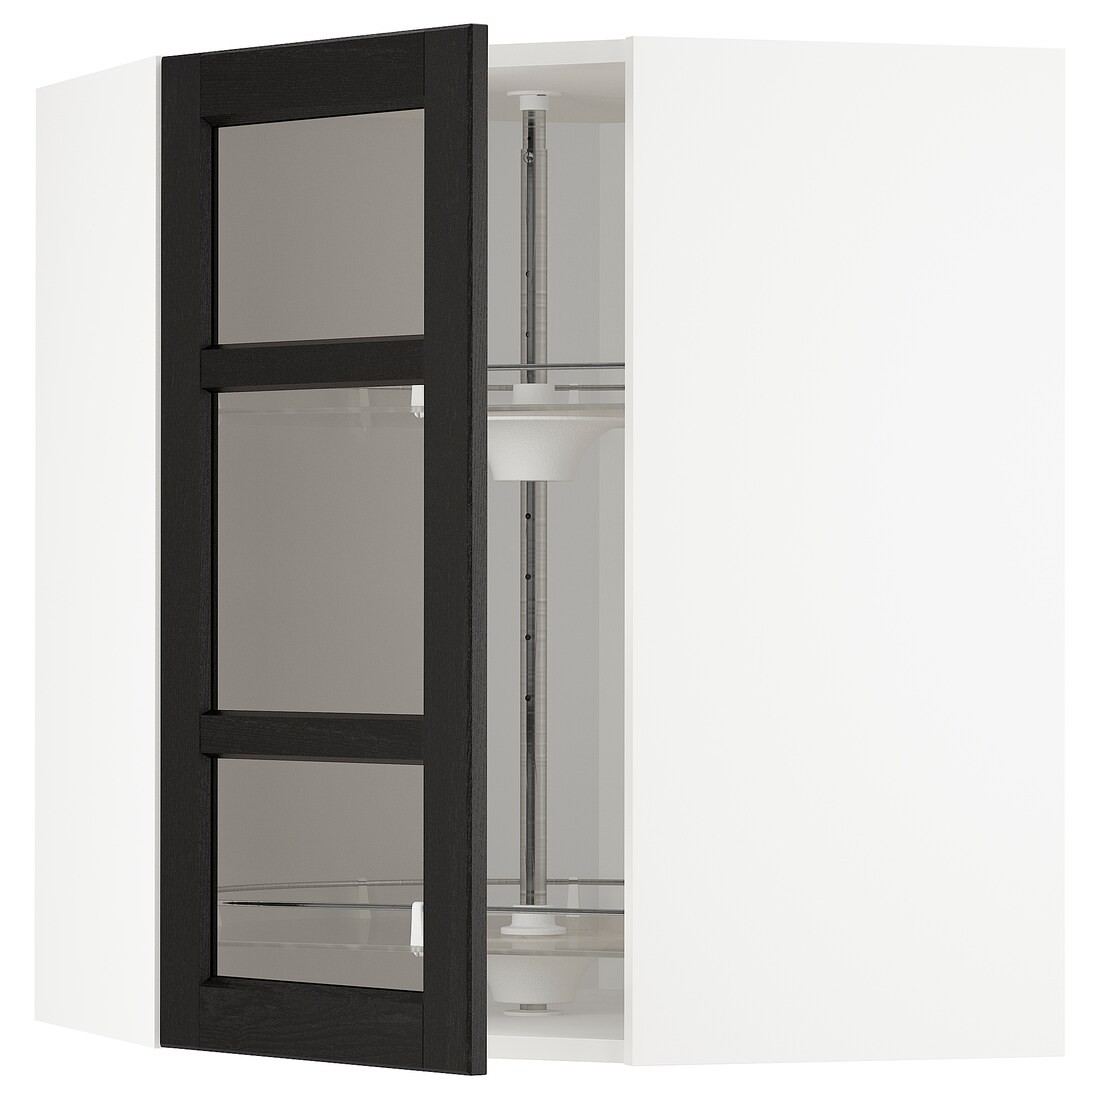 METOD МЕТОД Угловой настенный шкаф с каруселью / стеклянная дверь, белый / Lerhyttan черная морилка, 68x80 см